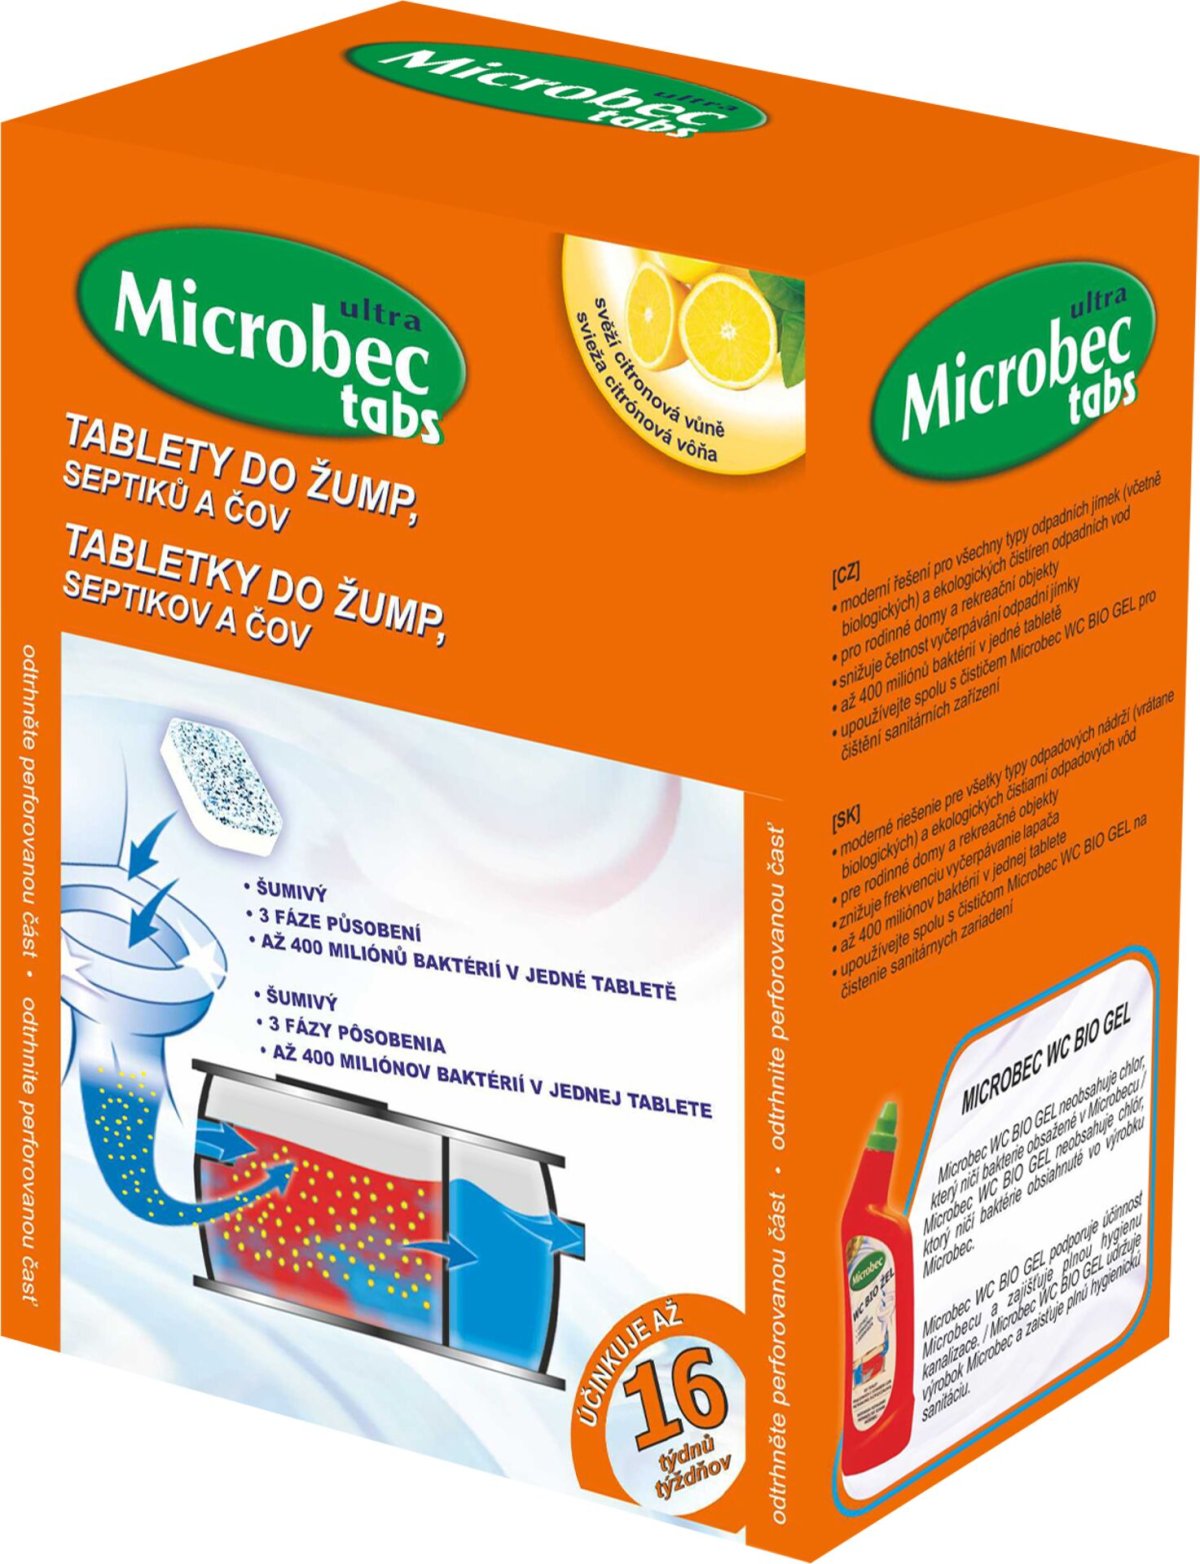 Bros - Microbec tablety do žump, septiků a ČOV 20g - 16 ks